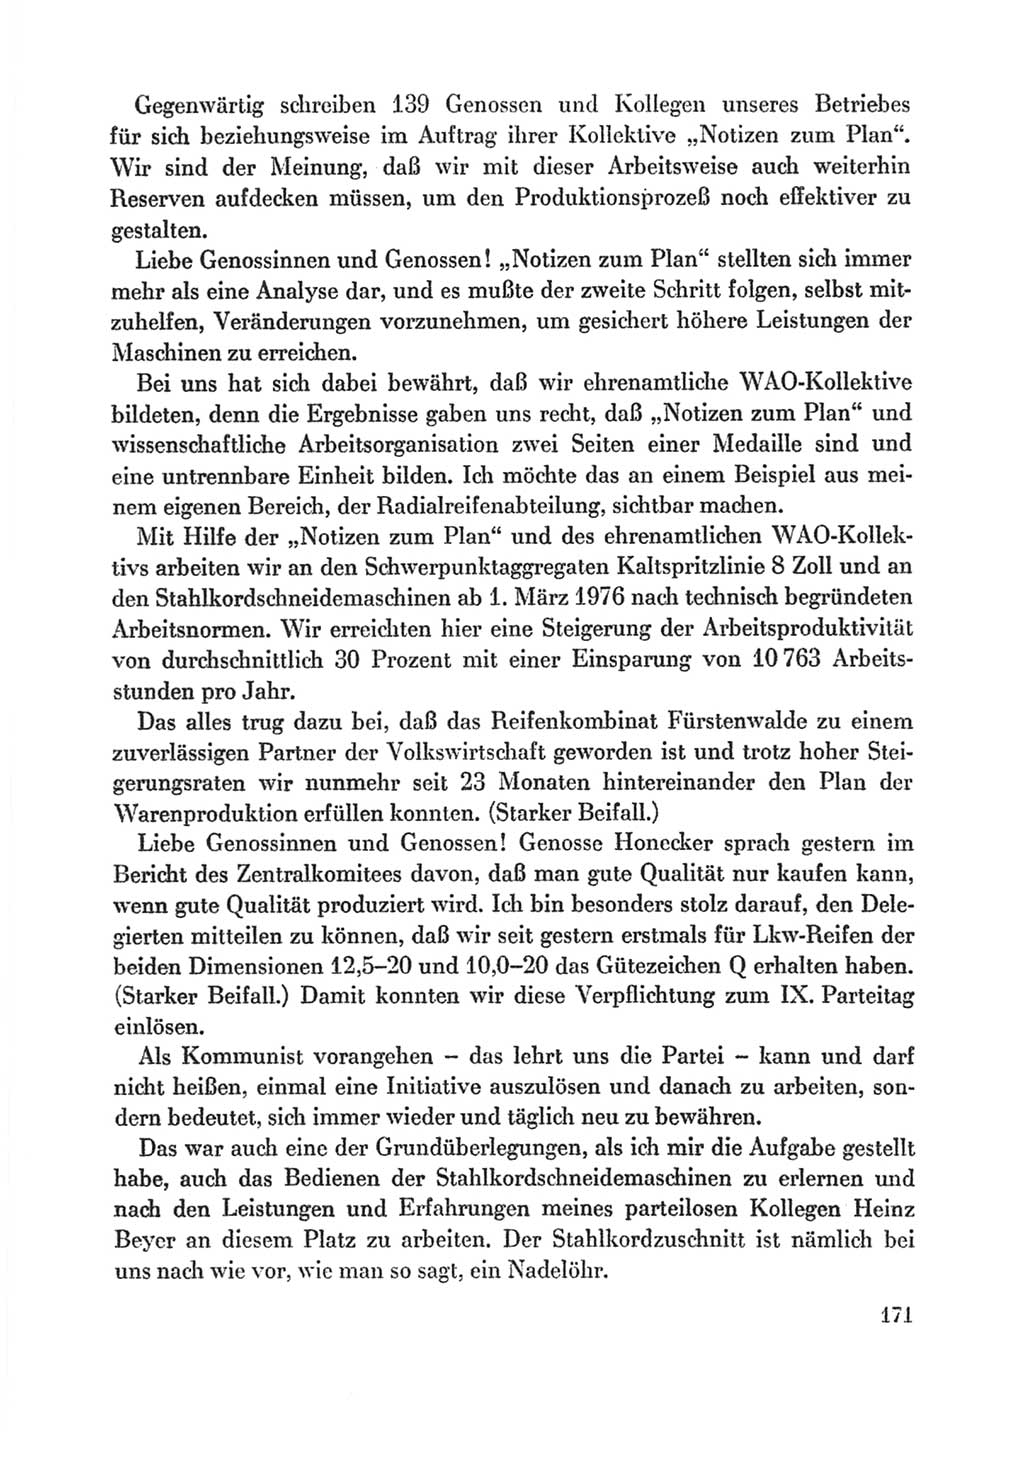 Protokoll der Verhandlungen des Ⅸ. Parteitages der Sozialistischen Einheitspartei Deutschlands (SED) [Deutsche Demokratische Republik (DDR)] 1976, Band 1, Seite 171 (Prot. Verh. Ⅸ. PT SED DDR 1976, Bd. 1, S. 171)